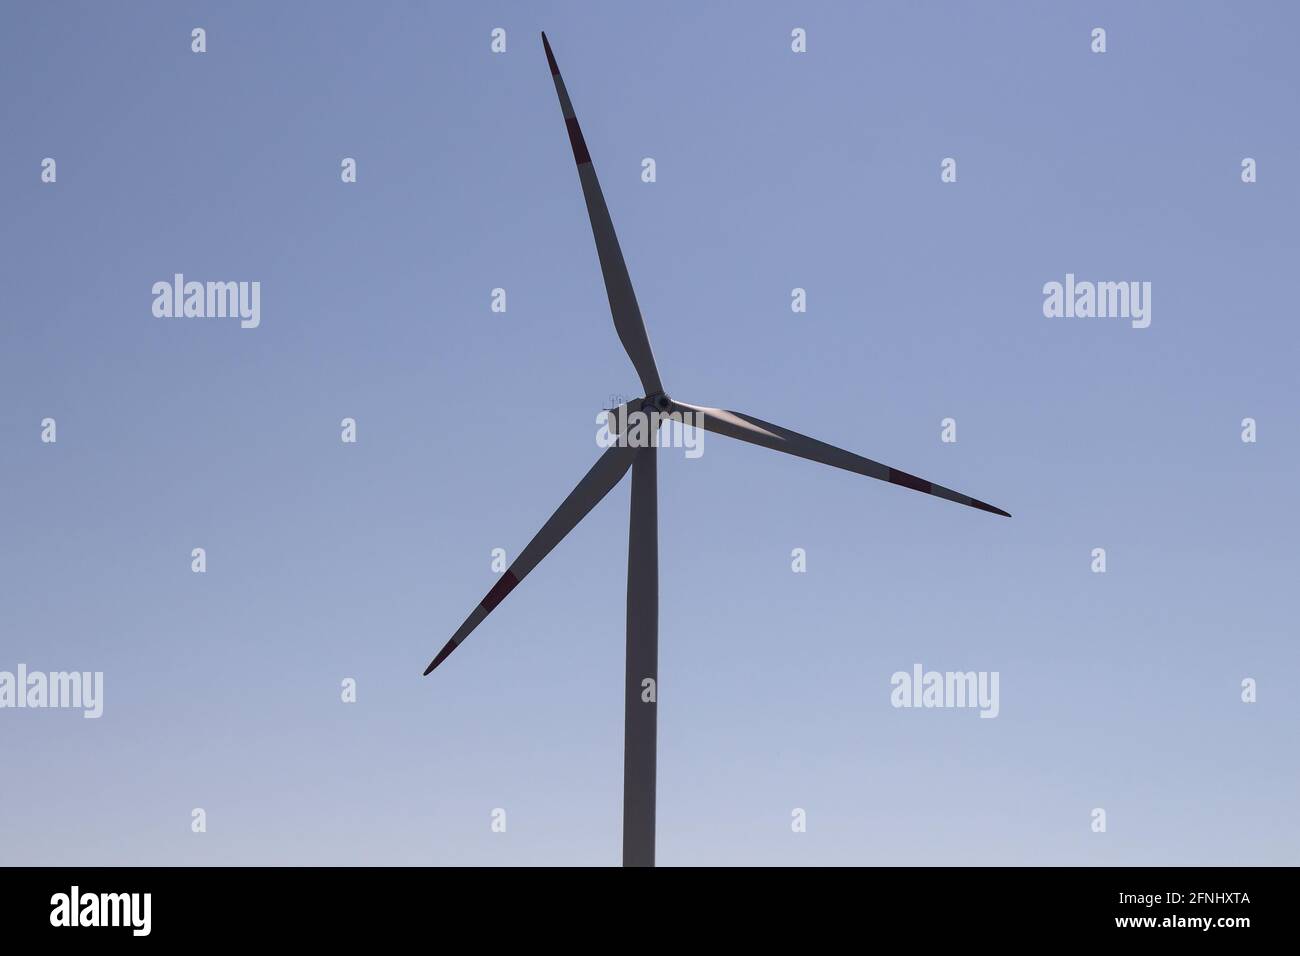 Nahaufnahme der Windmühle in Sigacik / Seferihisar in Izmir / Türkei. Windkraftanlage für saubere, erneuerbare Energie. Nachhaltigkeitskonzept. Stockfoto